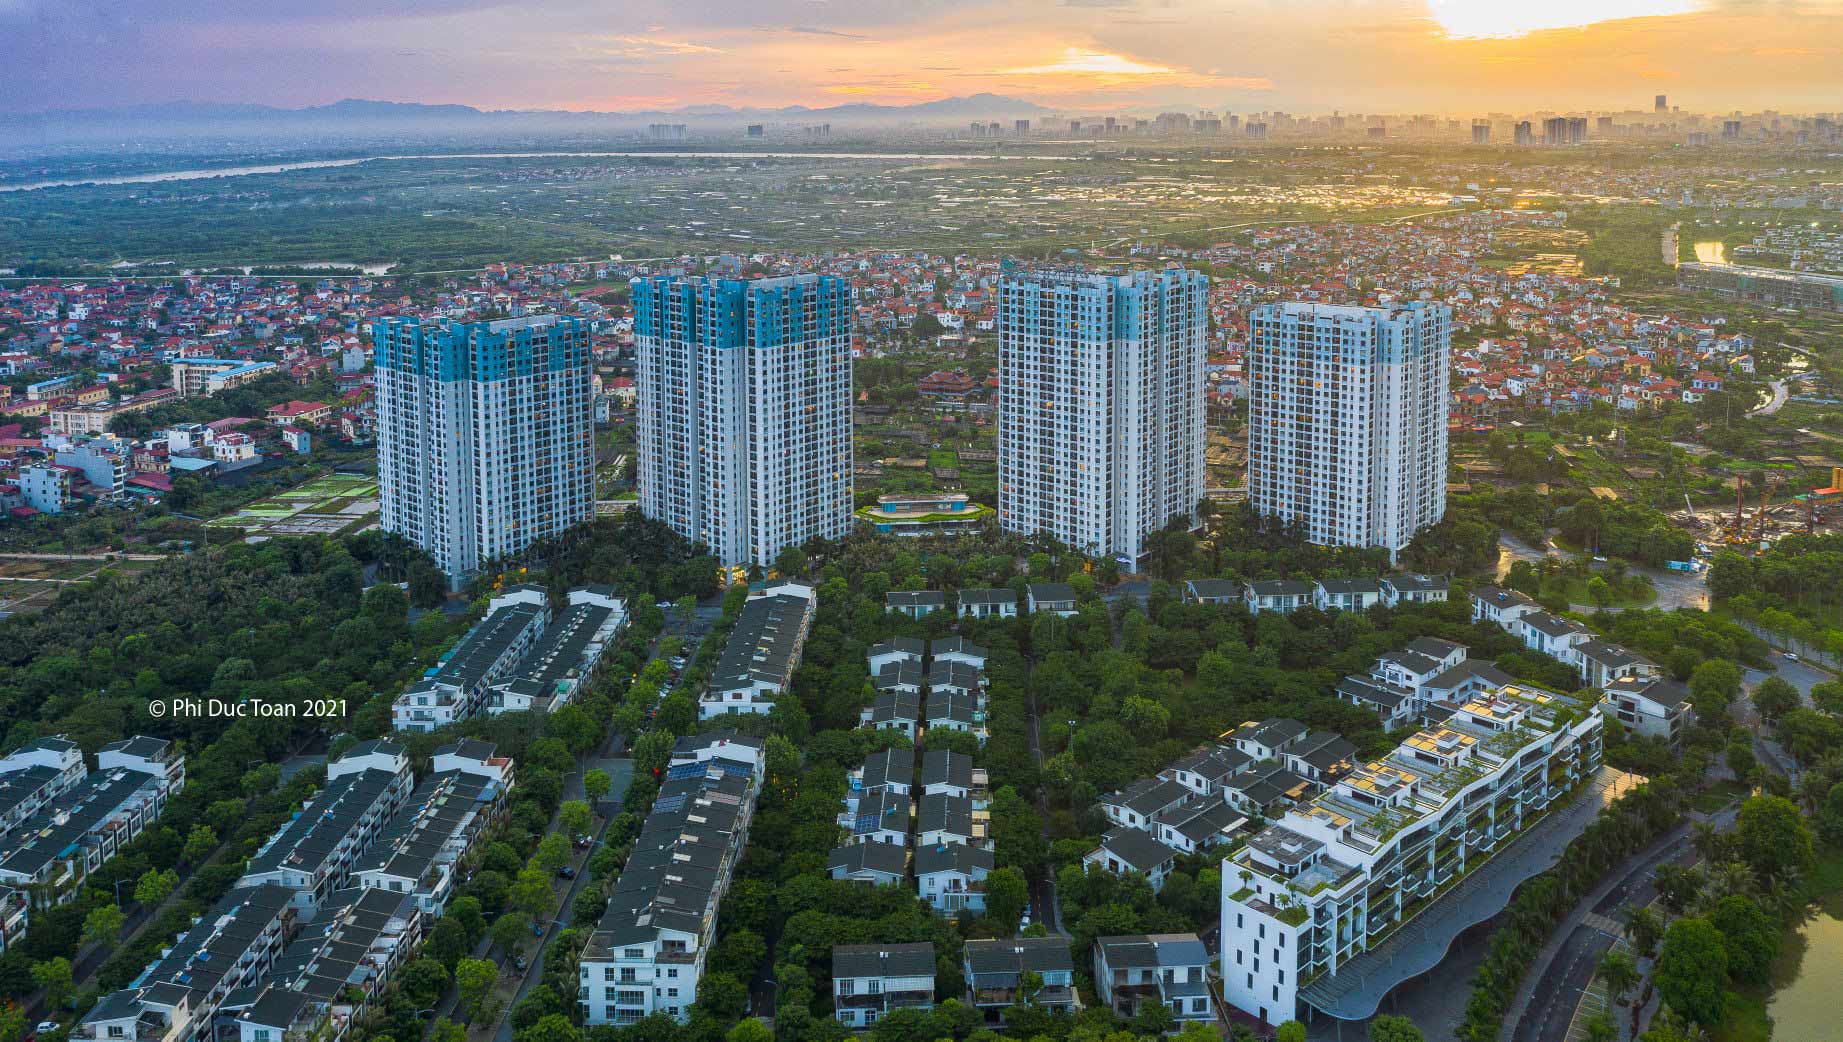 Khu đô thị Ecopark là dự án đầu tiên của tập đoàn Ecopark tại Việt Nam, cũng là thành phố xanh lớn nhất Việt Nam